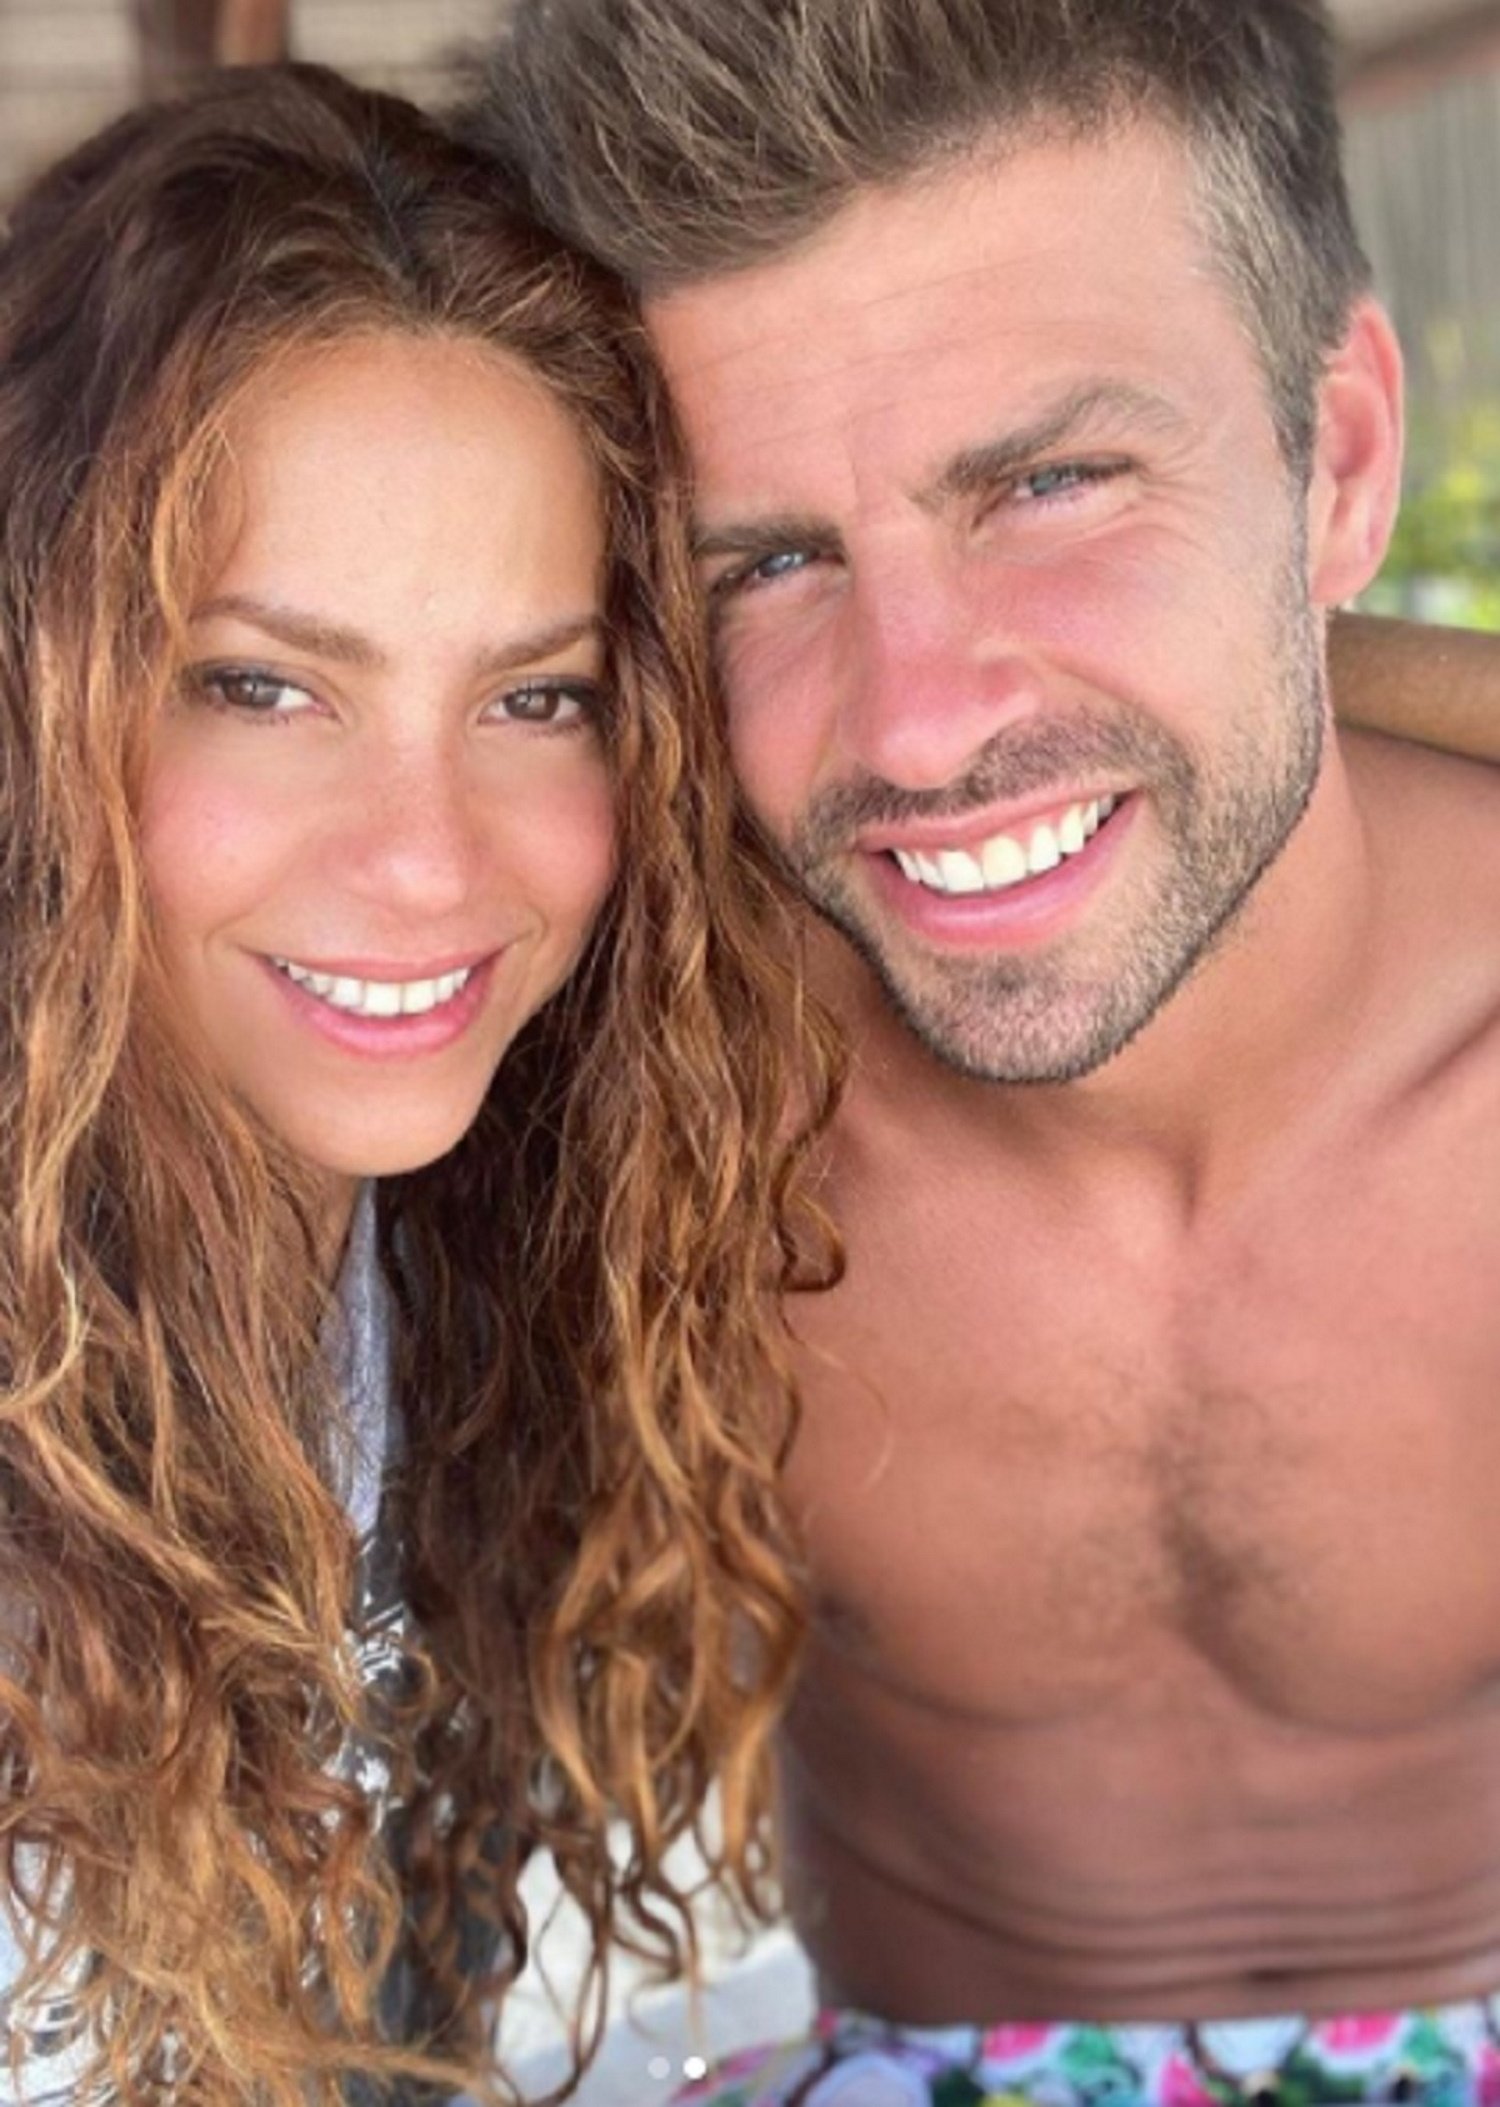 El romàntic petó de Piqué a Shakira que desfà la xarxa: "¡Qué rico todo!"